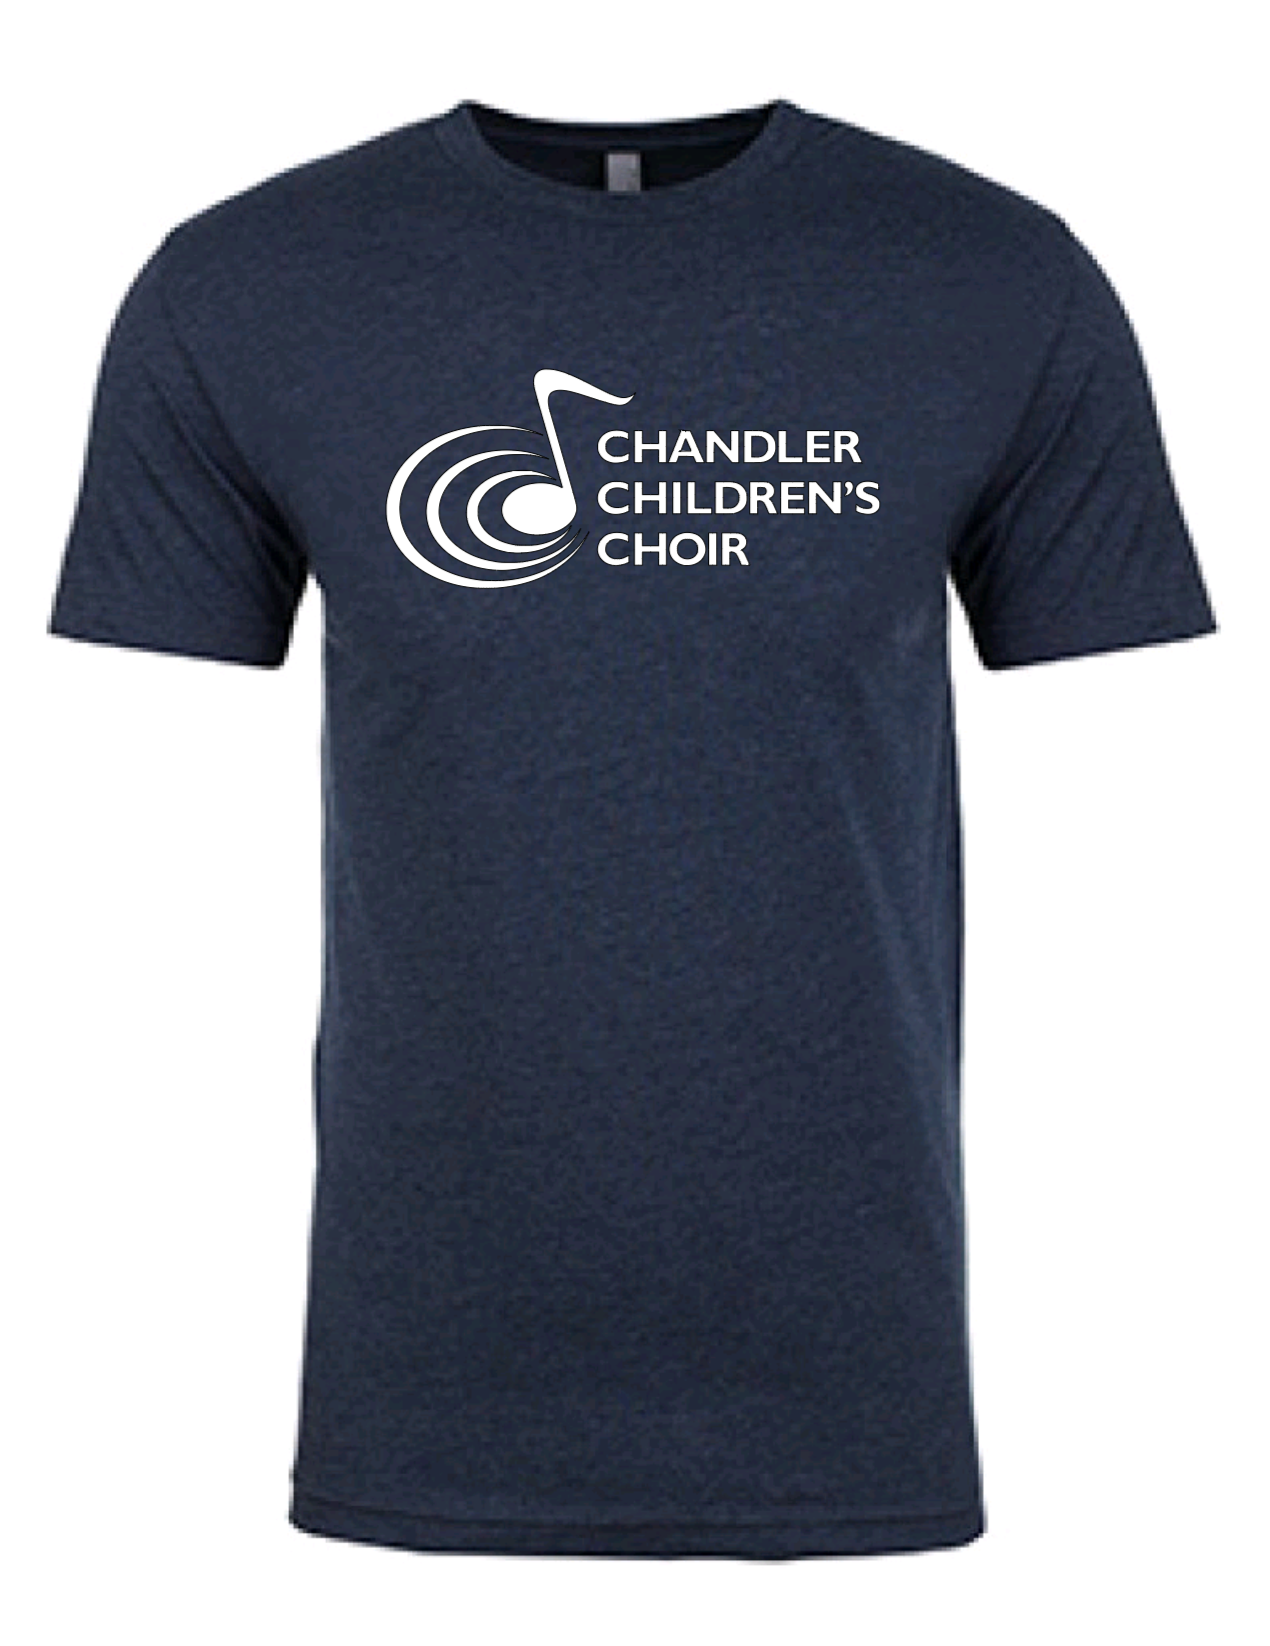 Chandler Children's Choir Adult T-Shirt